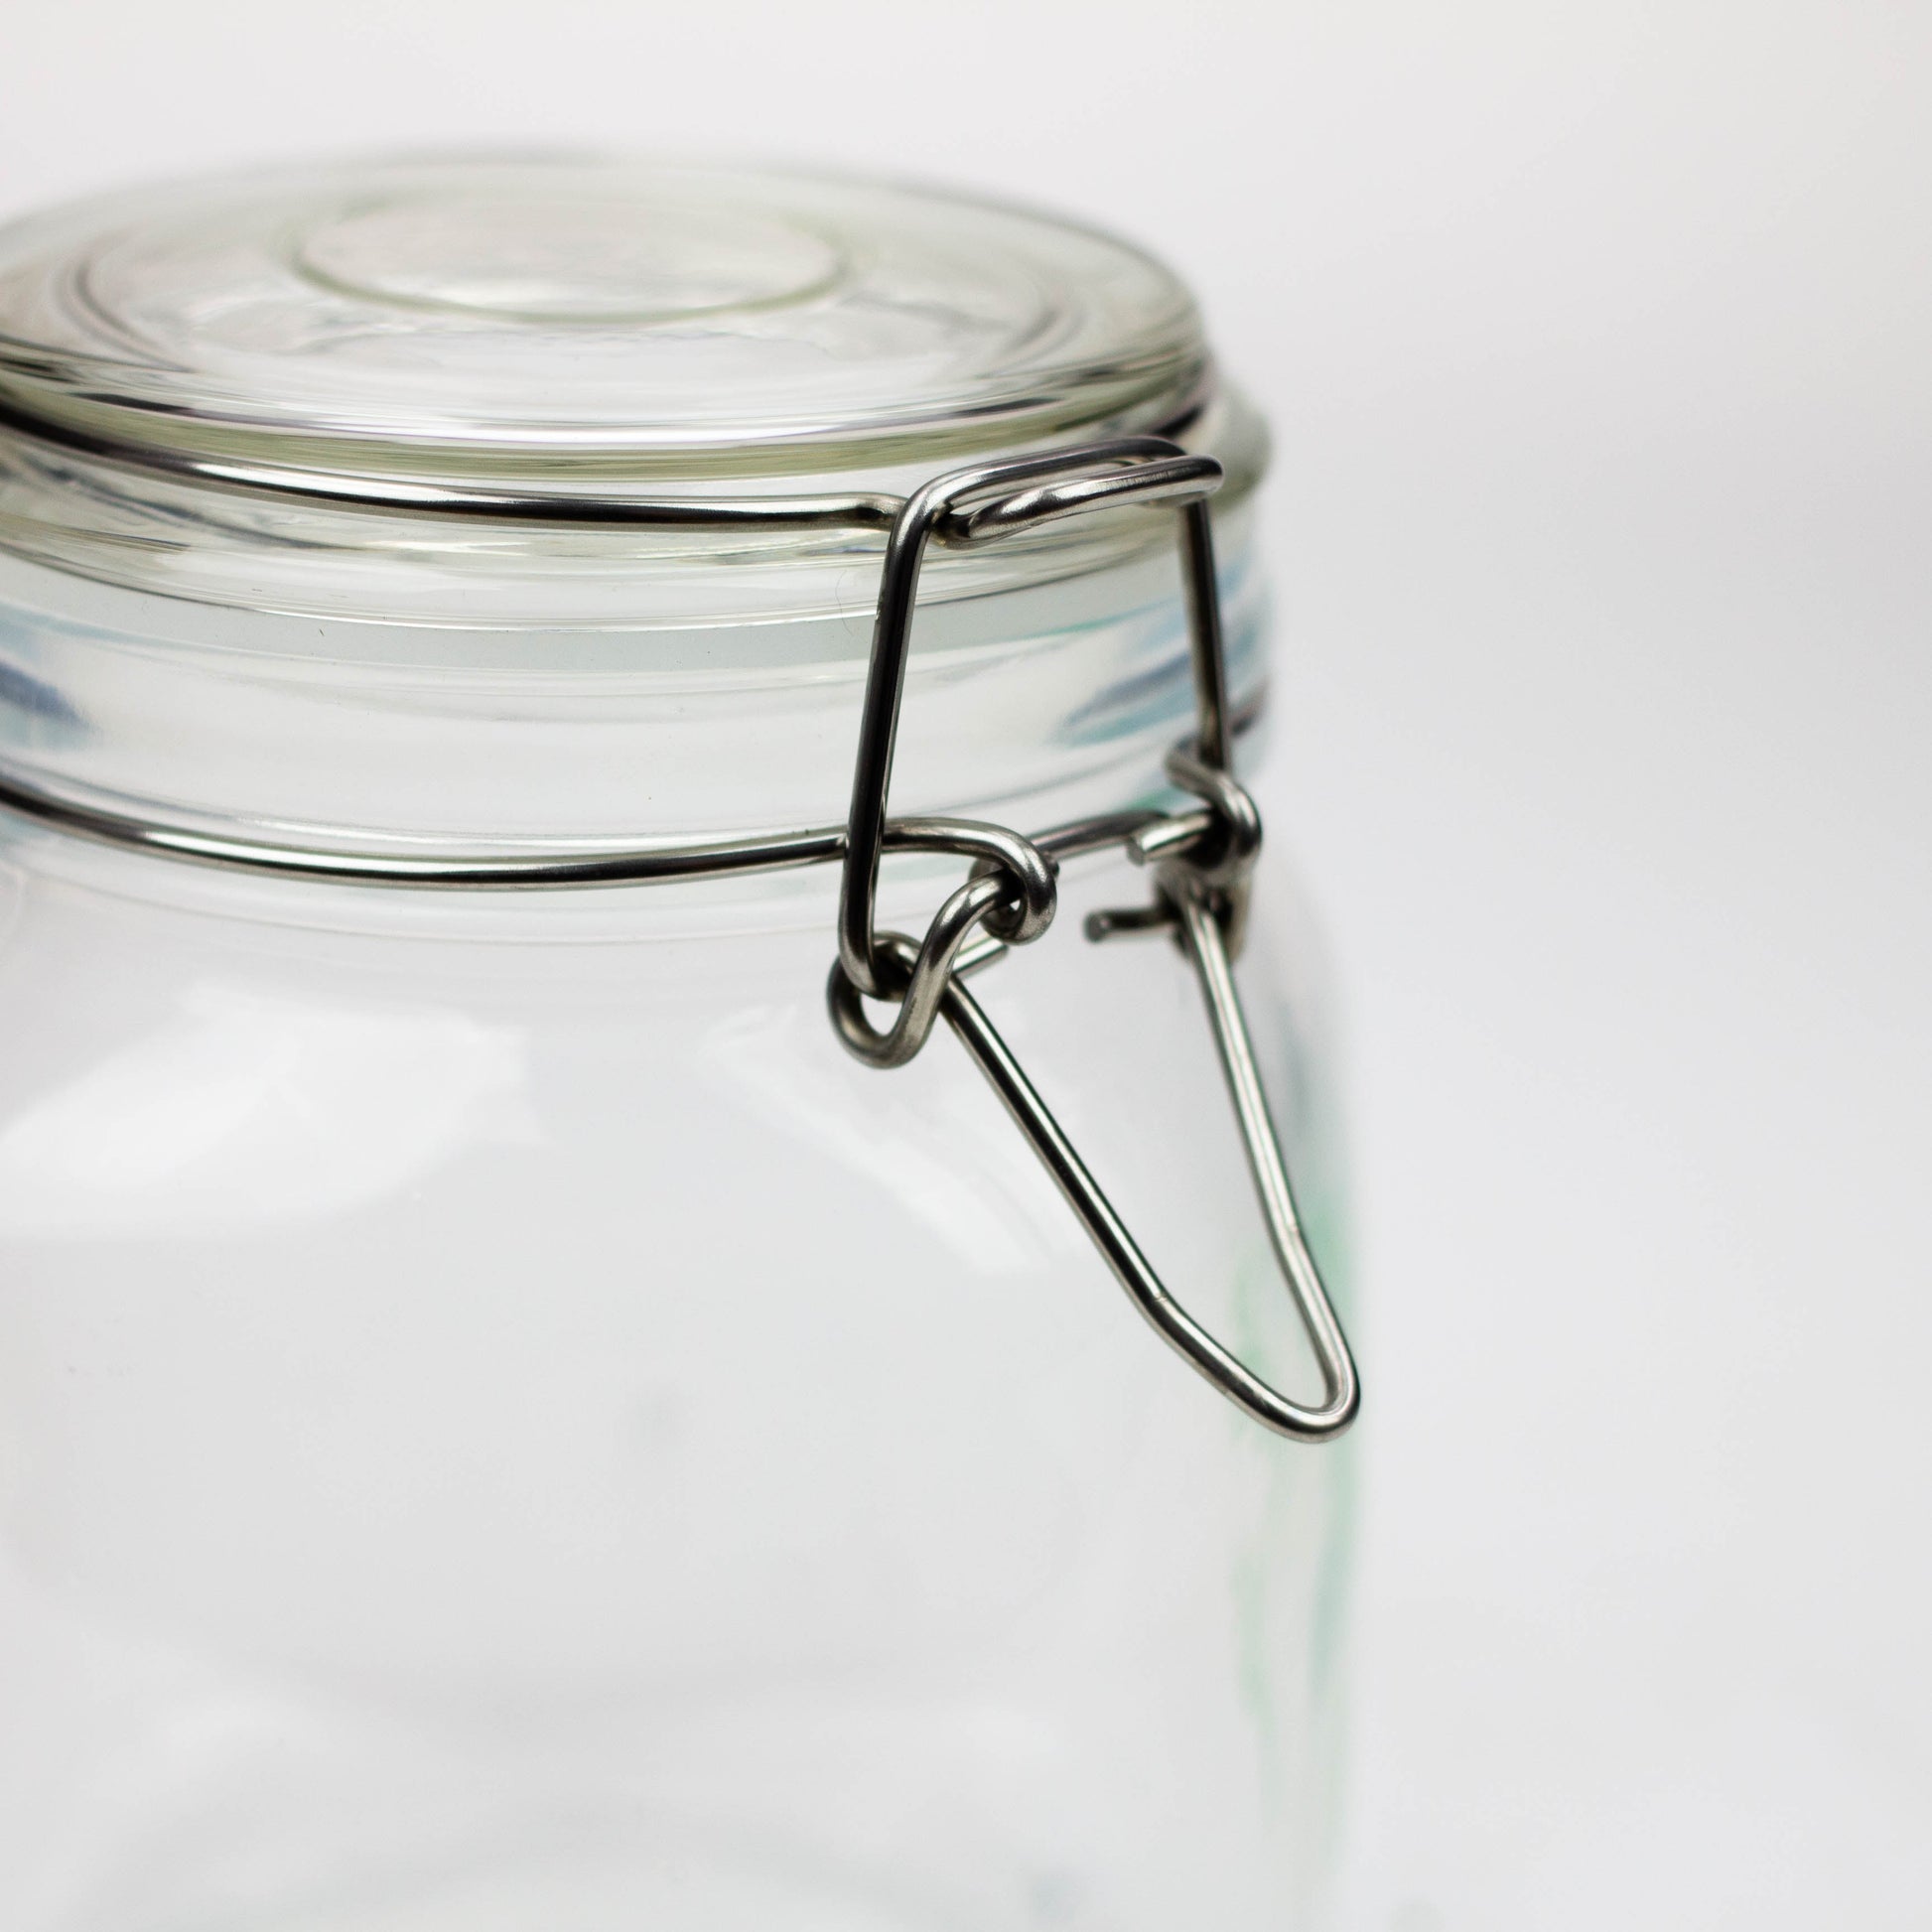 NG - Airtight Glass Jar with Lid_4